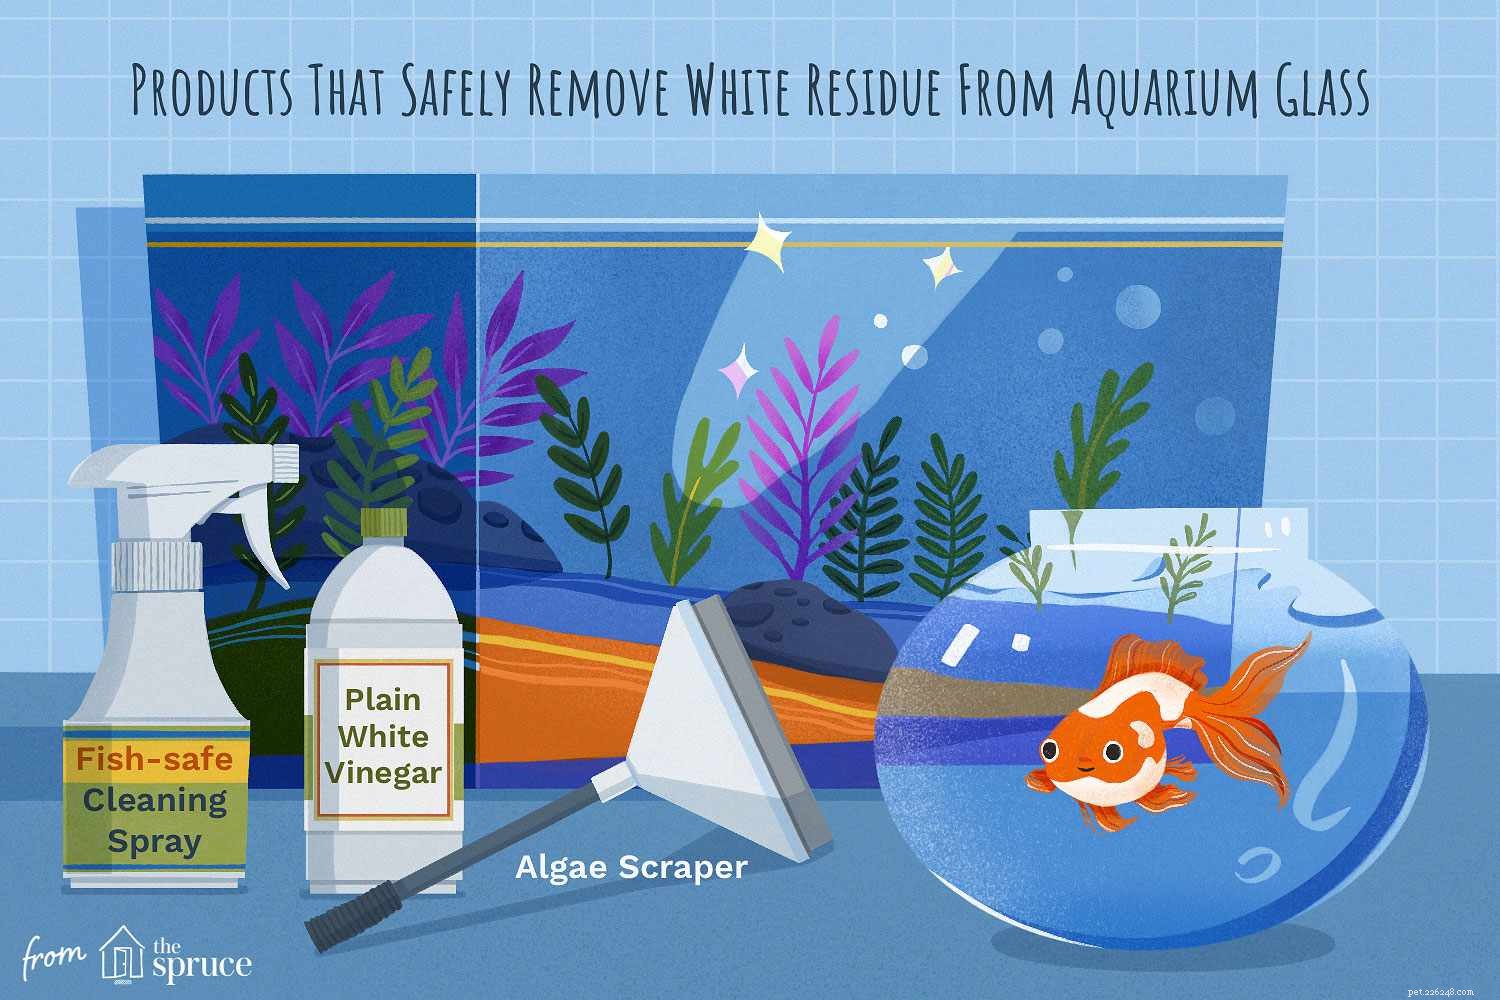 Wit residu op aquariumglas verwijderen en voorkomen